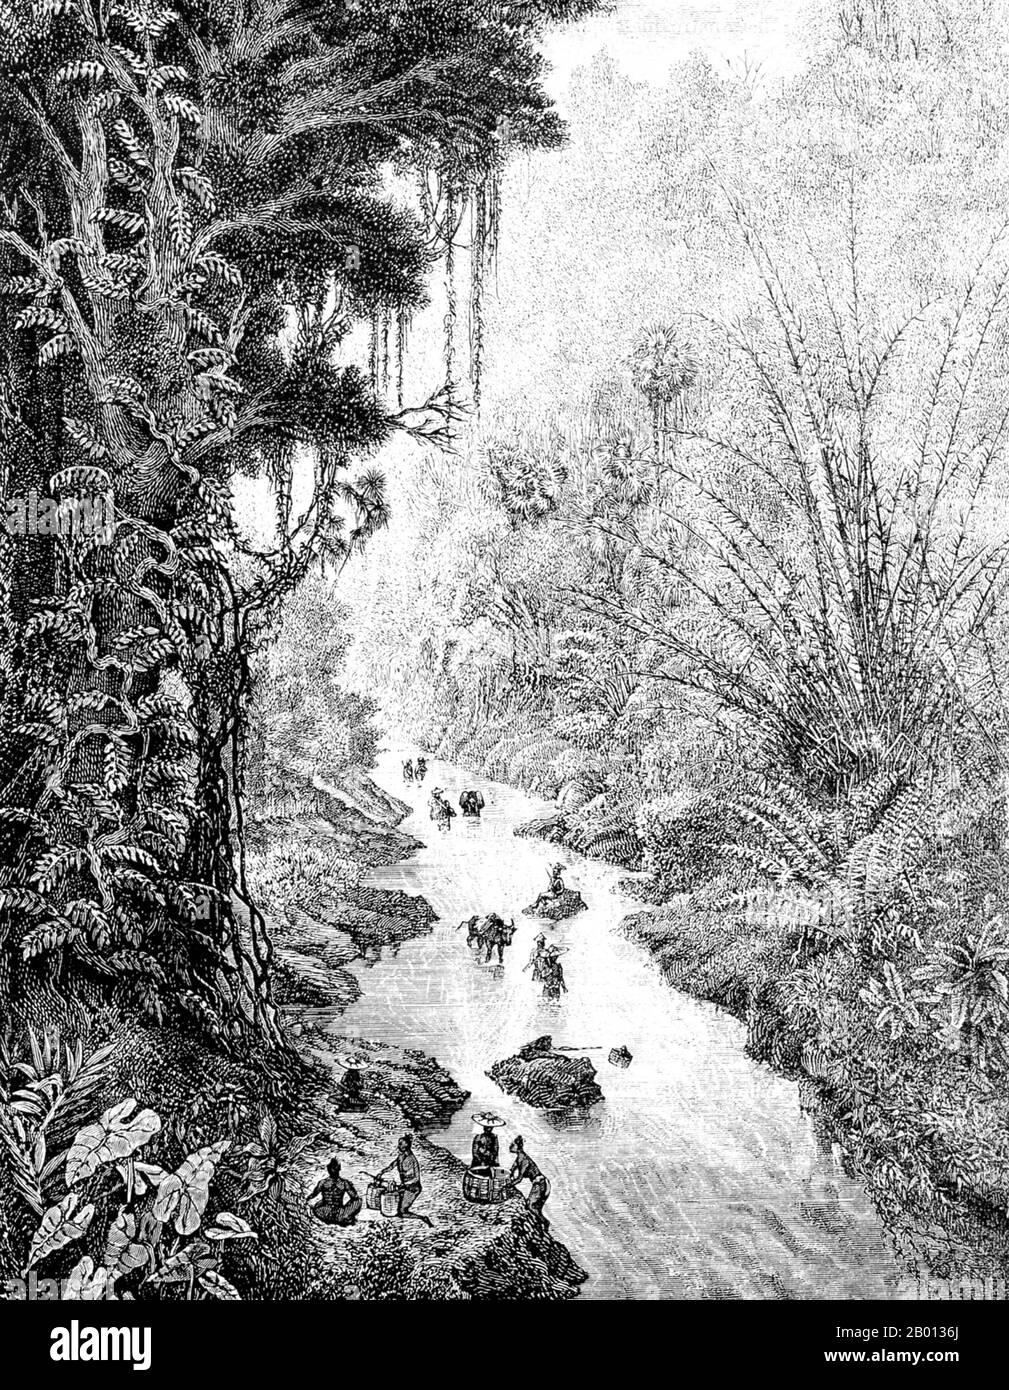 Birmania/Myanmar: Una spedizione francese si diresse verso ovest dal fiume Mekong su una gola verso Yong nello Stato di Shan. Incisione di Louis Delaporte (1842-1925), 1867. Questa illustrazione era una delle dozzine prodotte da Louis Delaporte durante un'impresa biennale (1866-68) con la Commissione esplorativa di Mekong, l'intenzione di porre le basi per l'espansione delle colonie francesi in Indocina. Di questa tappa del viaggio nel luglio 1867, un espediente scrisse più tardi: 'Una [doccia] era così pesante che presto penetrò il tetto fragile di foglie e furono ubriacate sotto le loro coperte...' Foto Stock